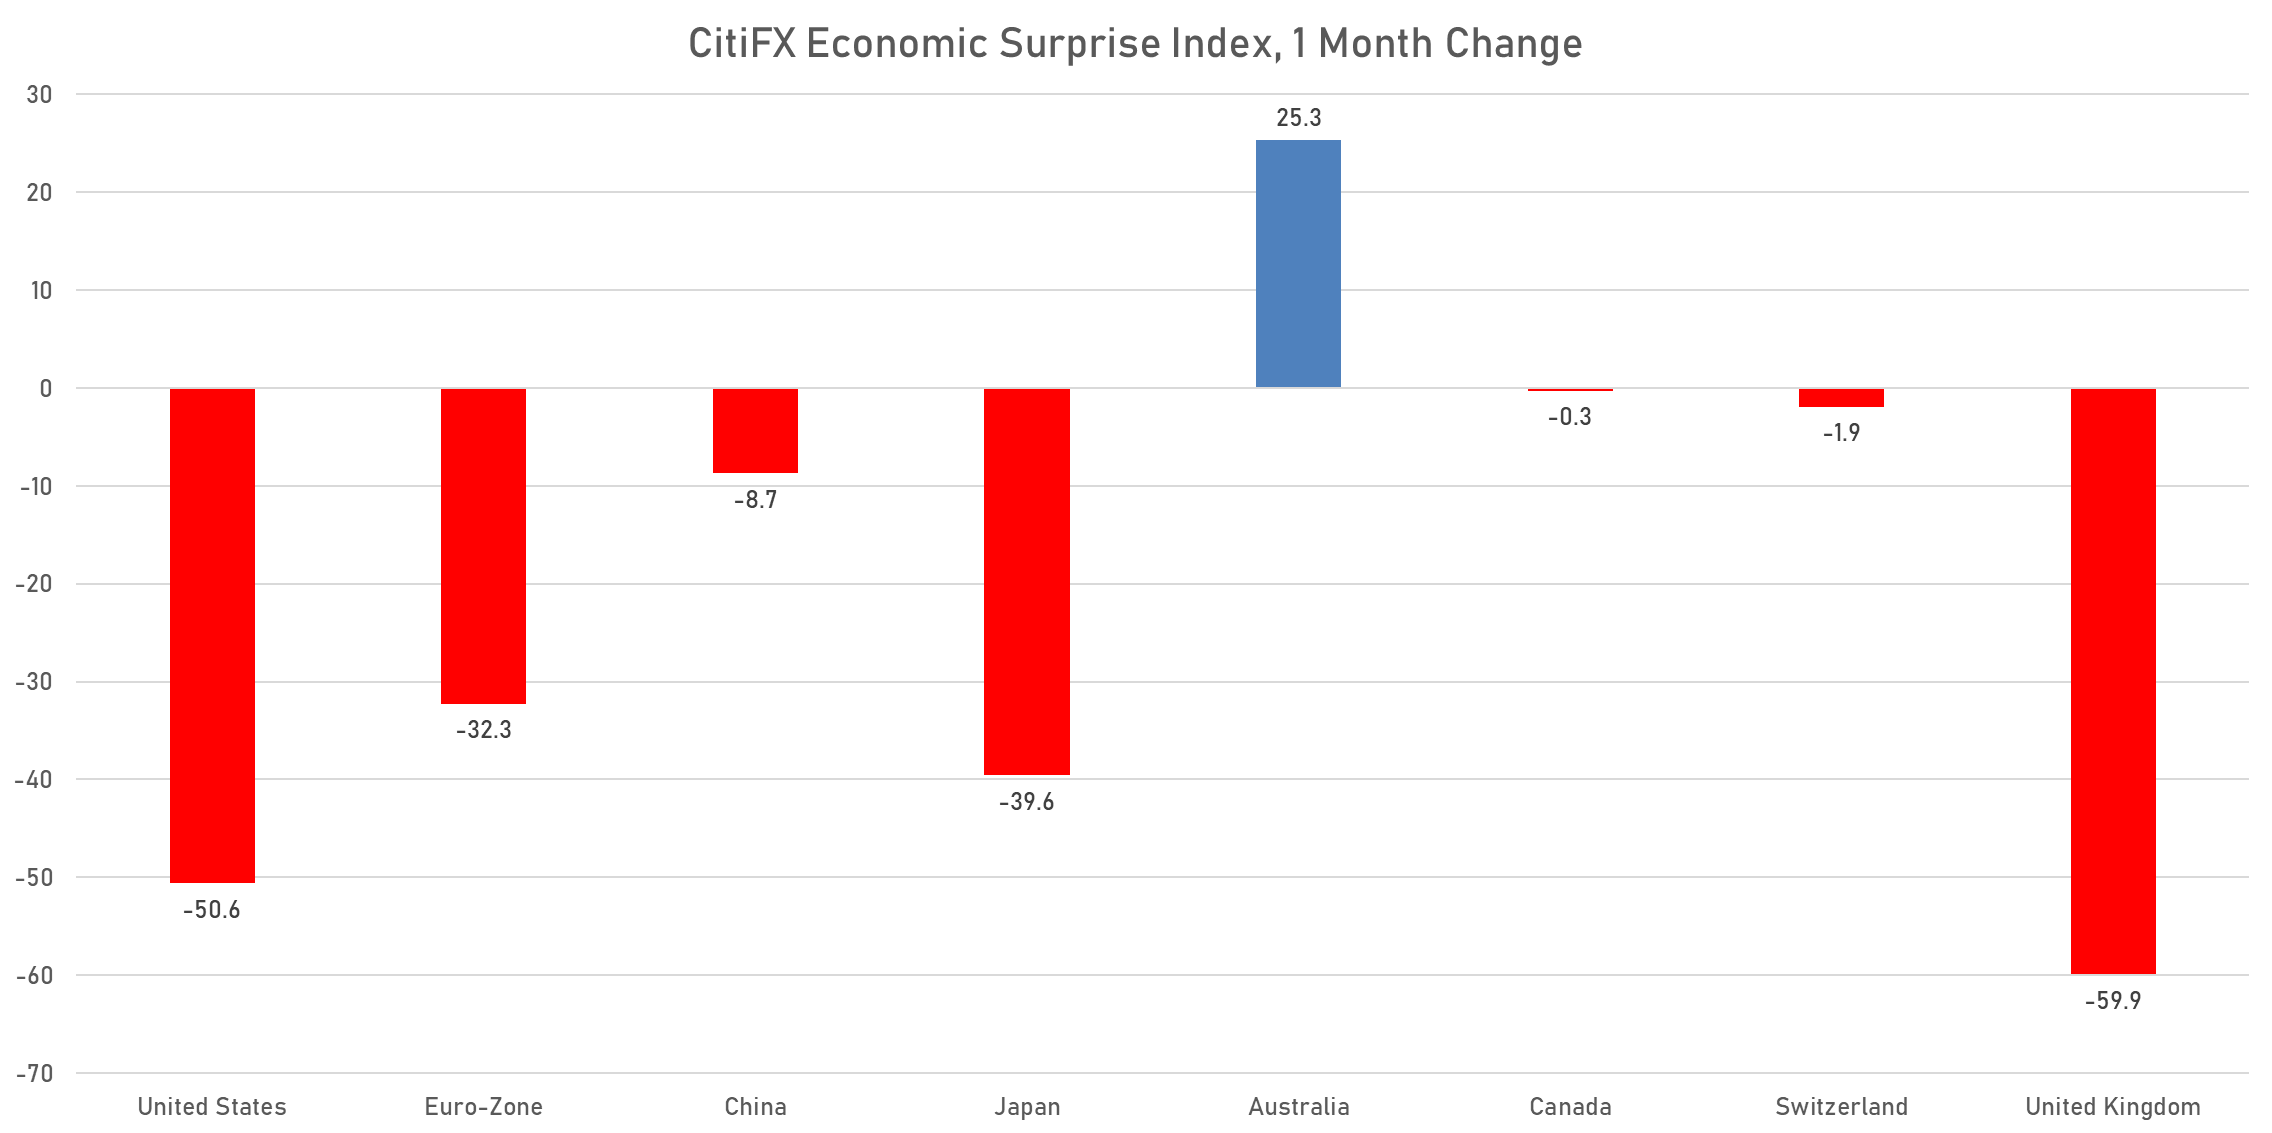 CitiFX Economic Surprise Indices | Sources: phipost.com, Refinitiv data